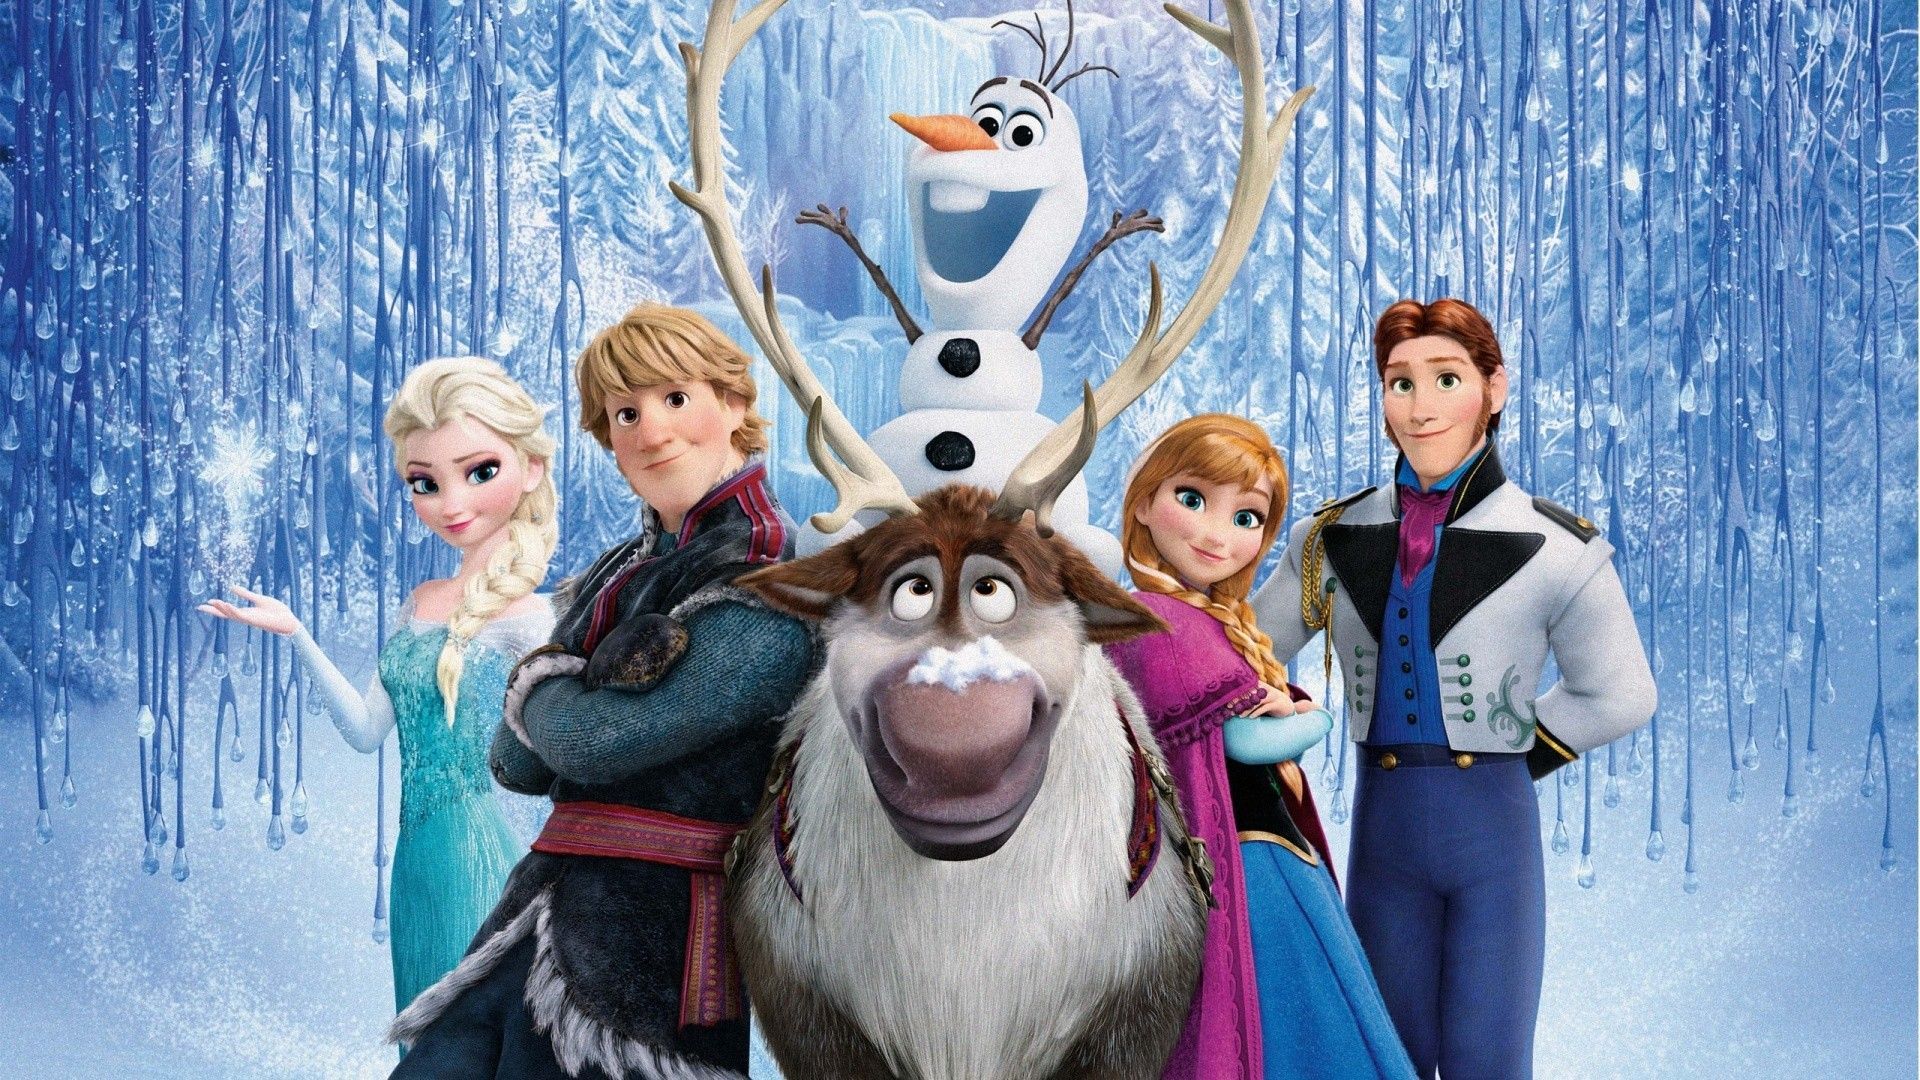 Frozen Disney Characters Wallpaper. Frozen movie, Disney frozen party, Disney frozen